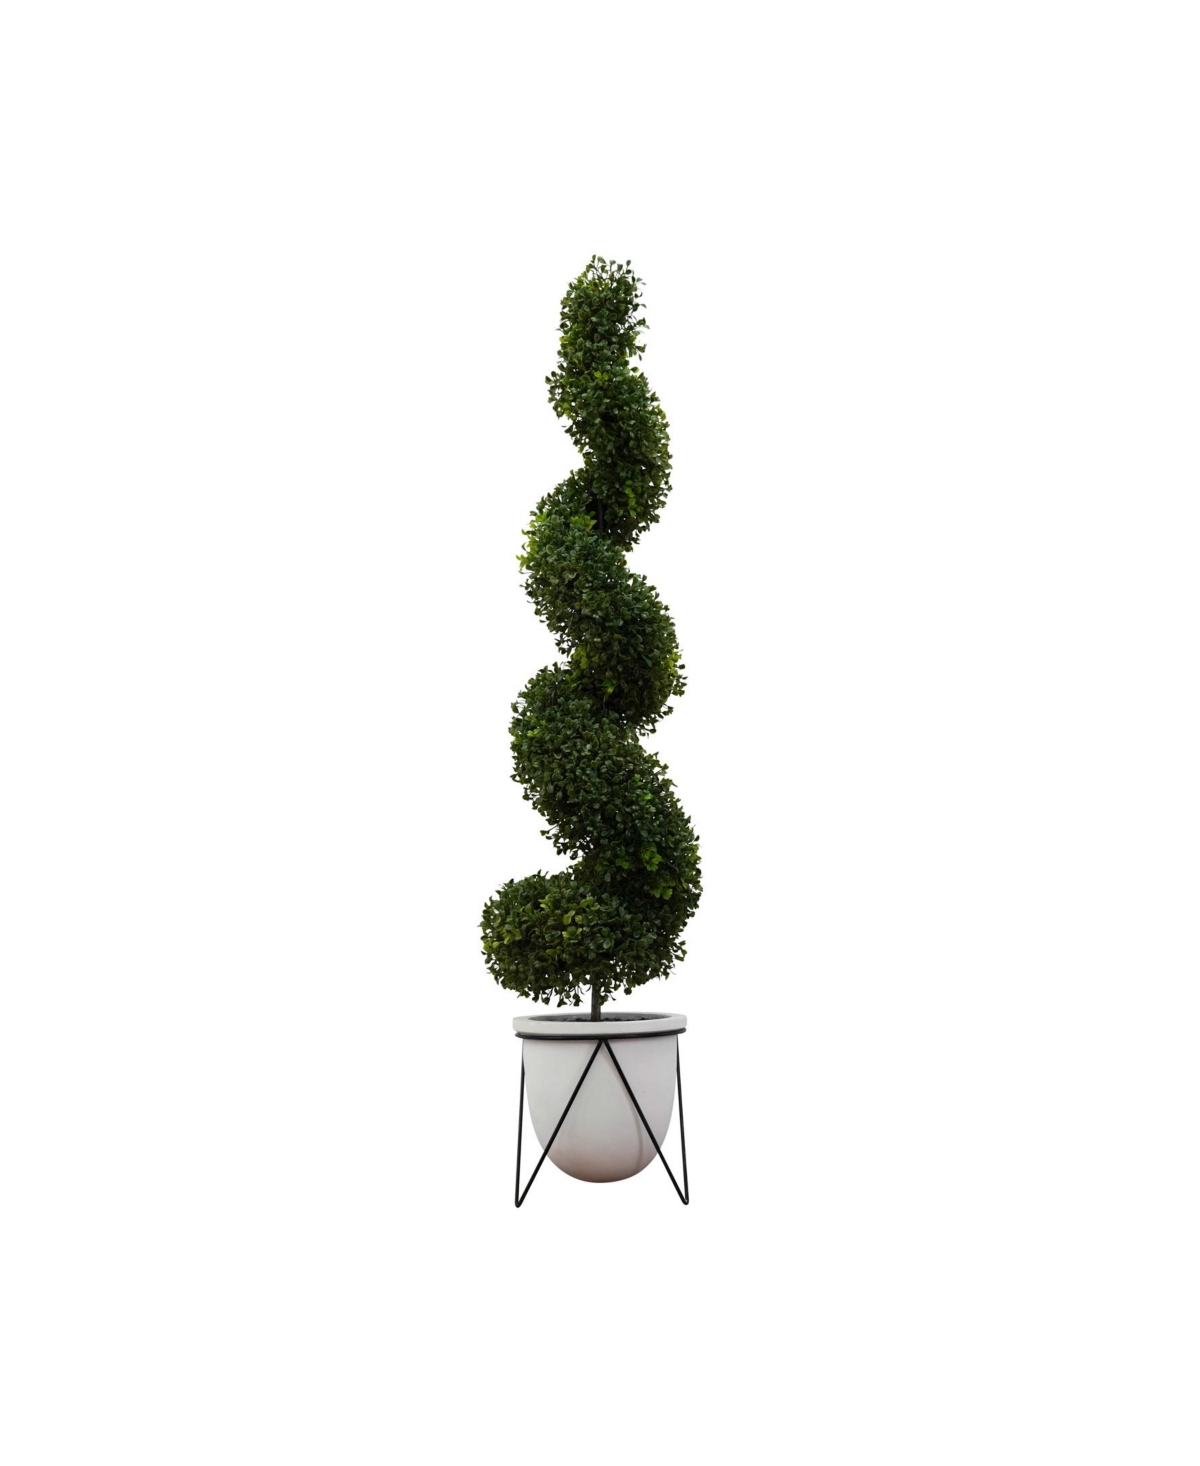 Artificial Topiary in Decorative Ceramic Pot, 48" - White